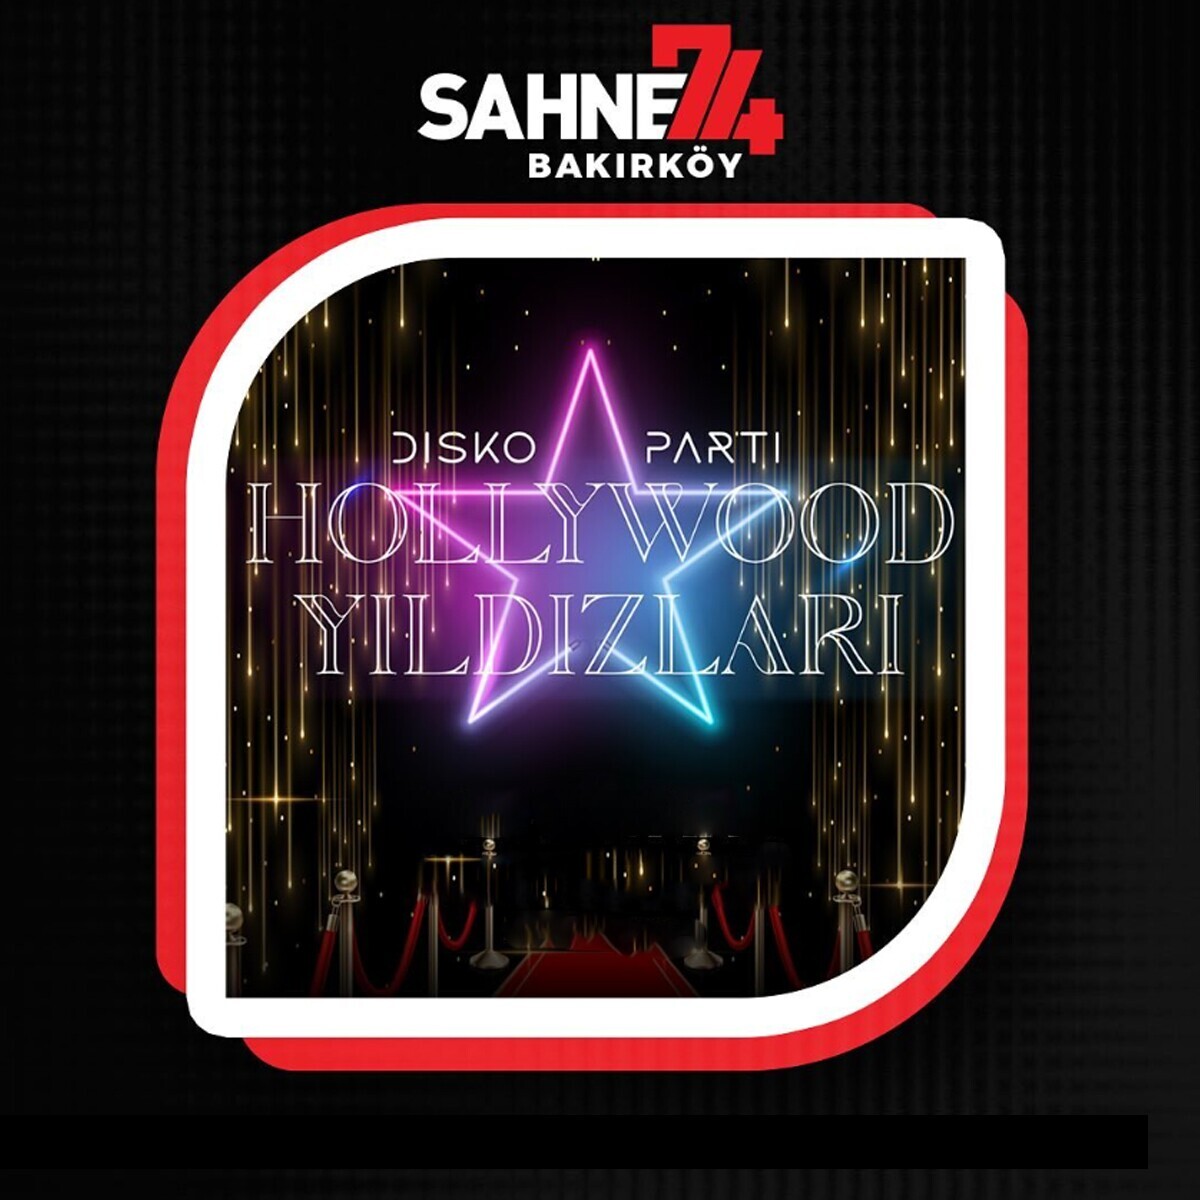 27 Nisan Hollywood Yıldızları Disko Parti Bakırköy Sahne 74 Konser Bileti